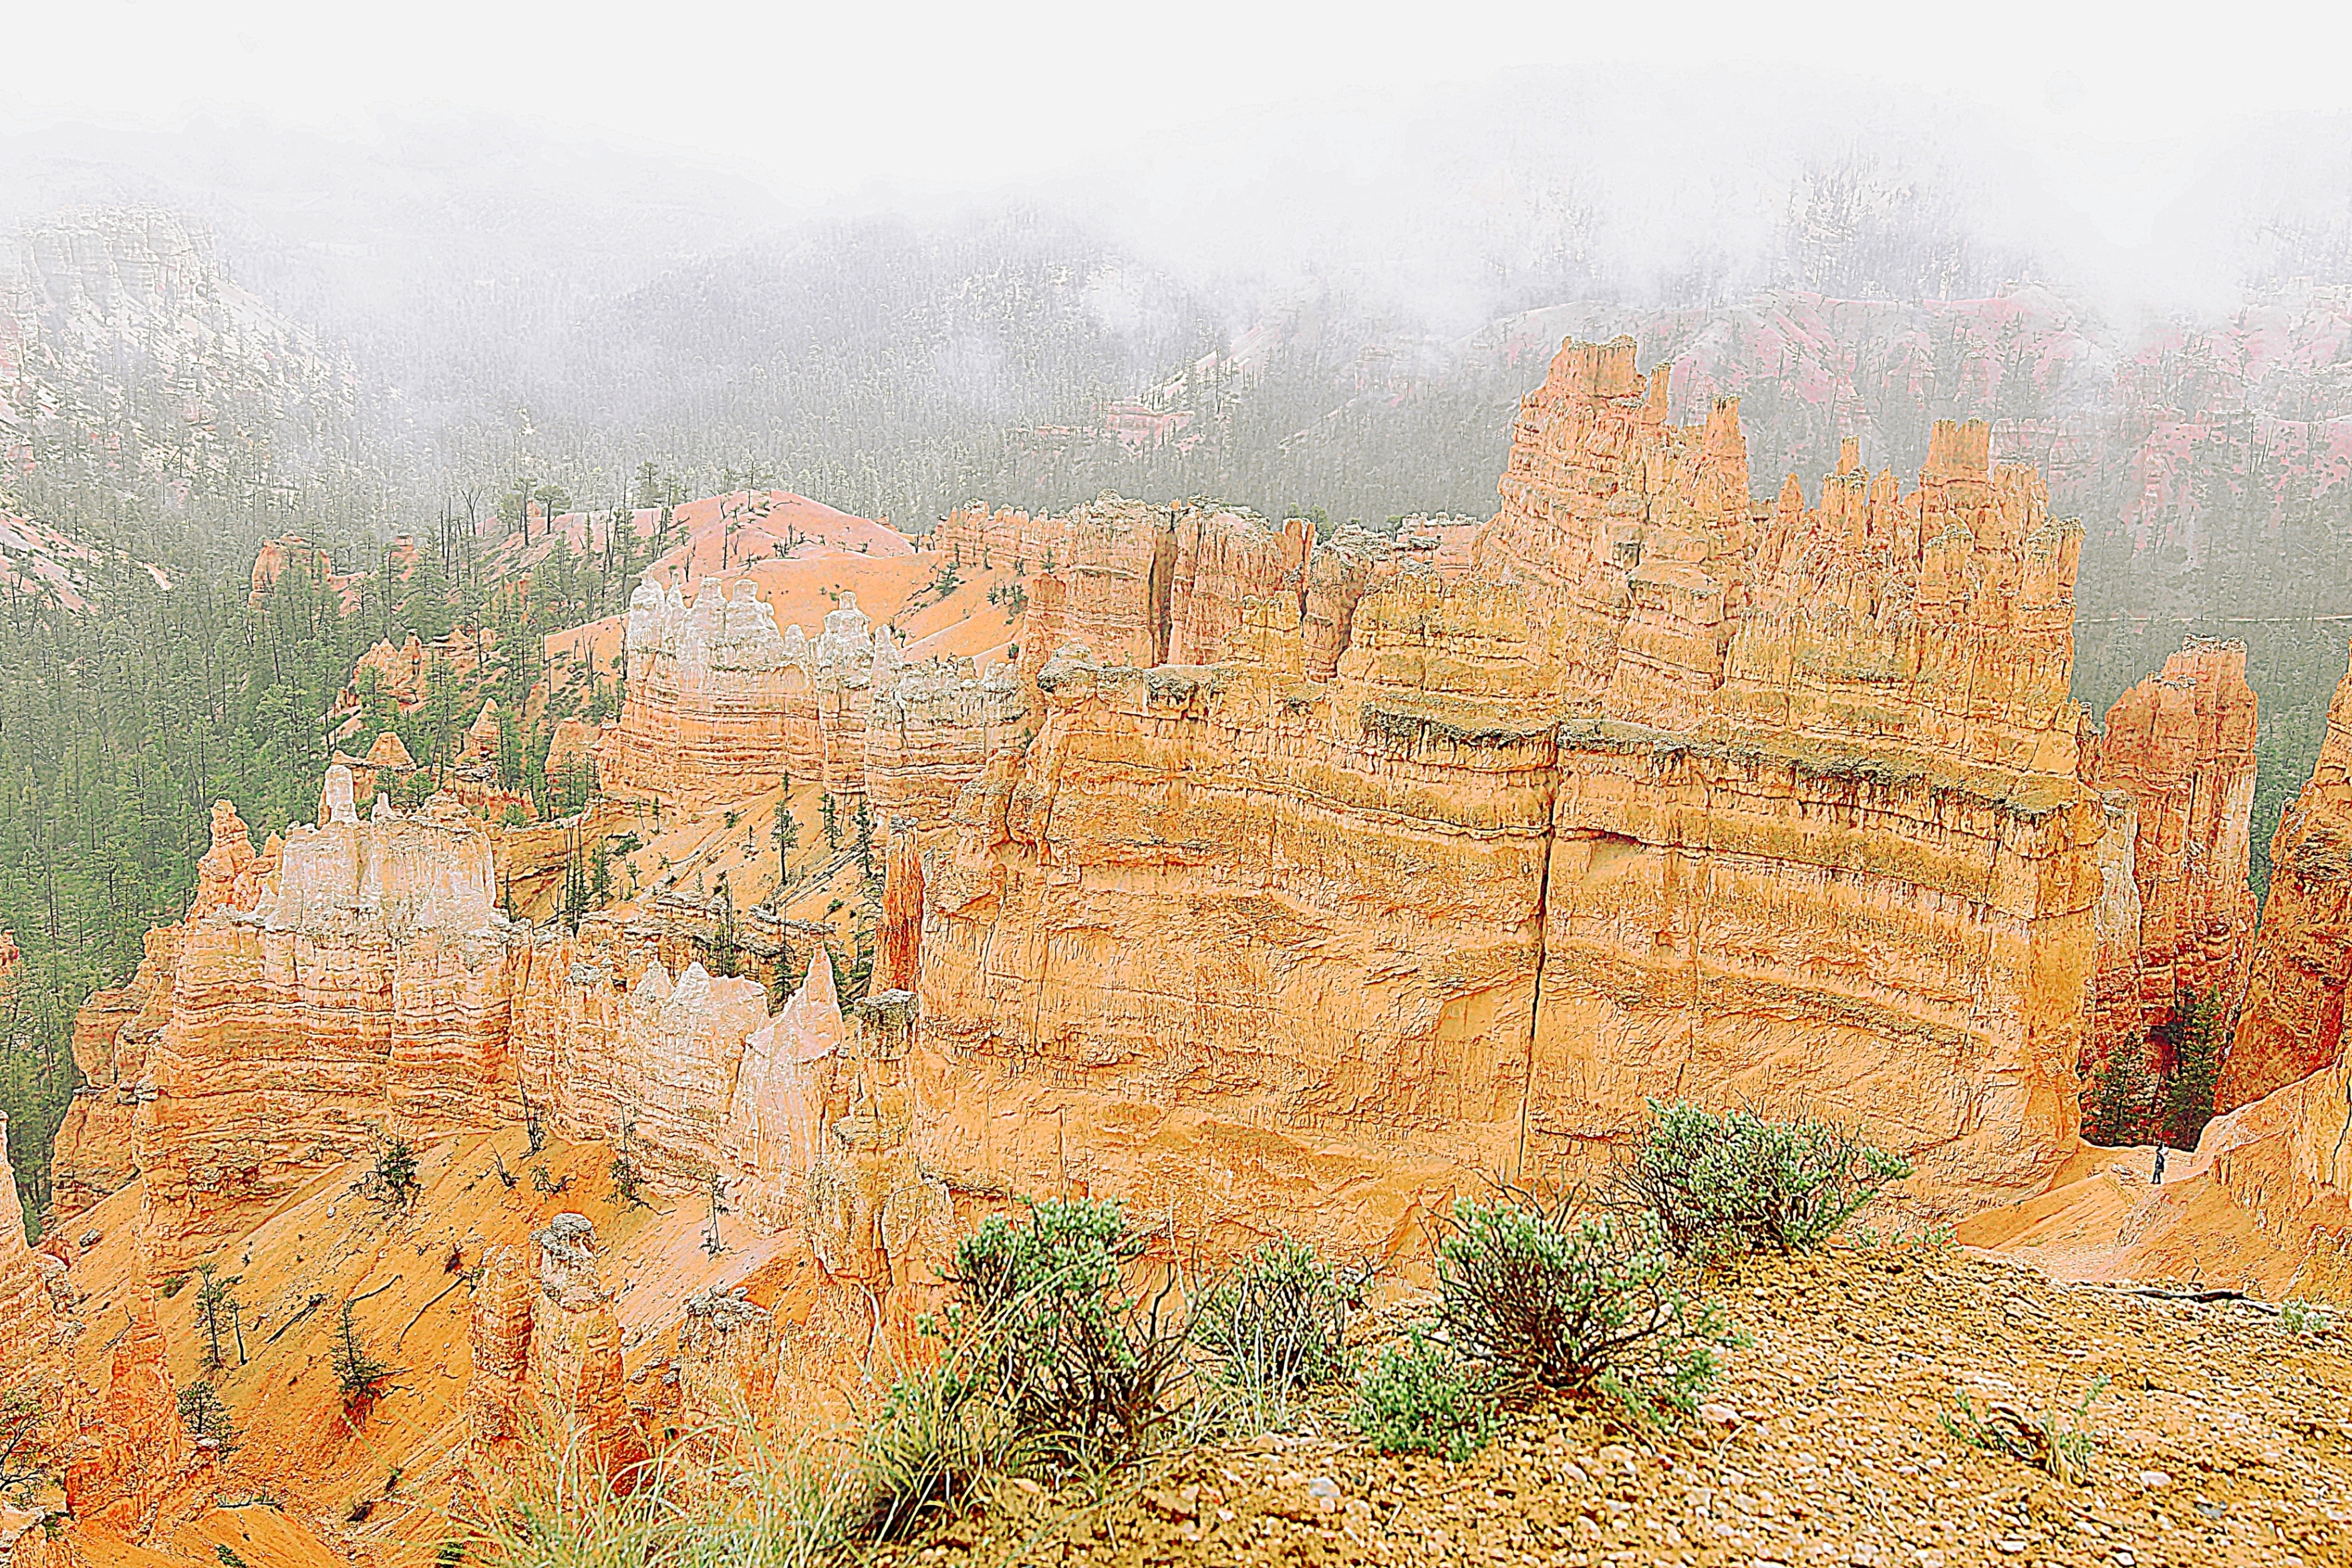 Скалы в Национальном парке Брайс Каньон. Фото Морошкина В.В.